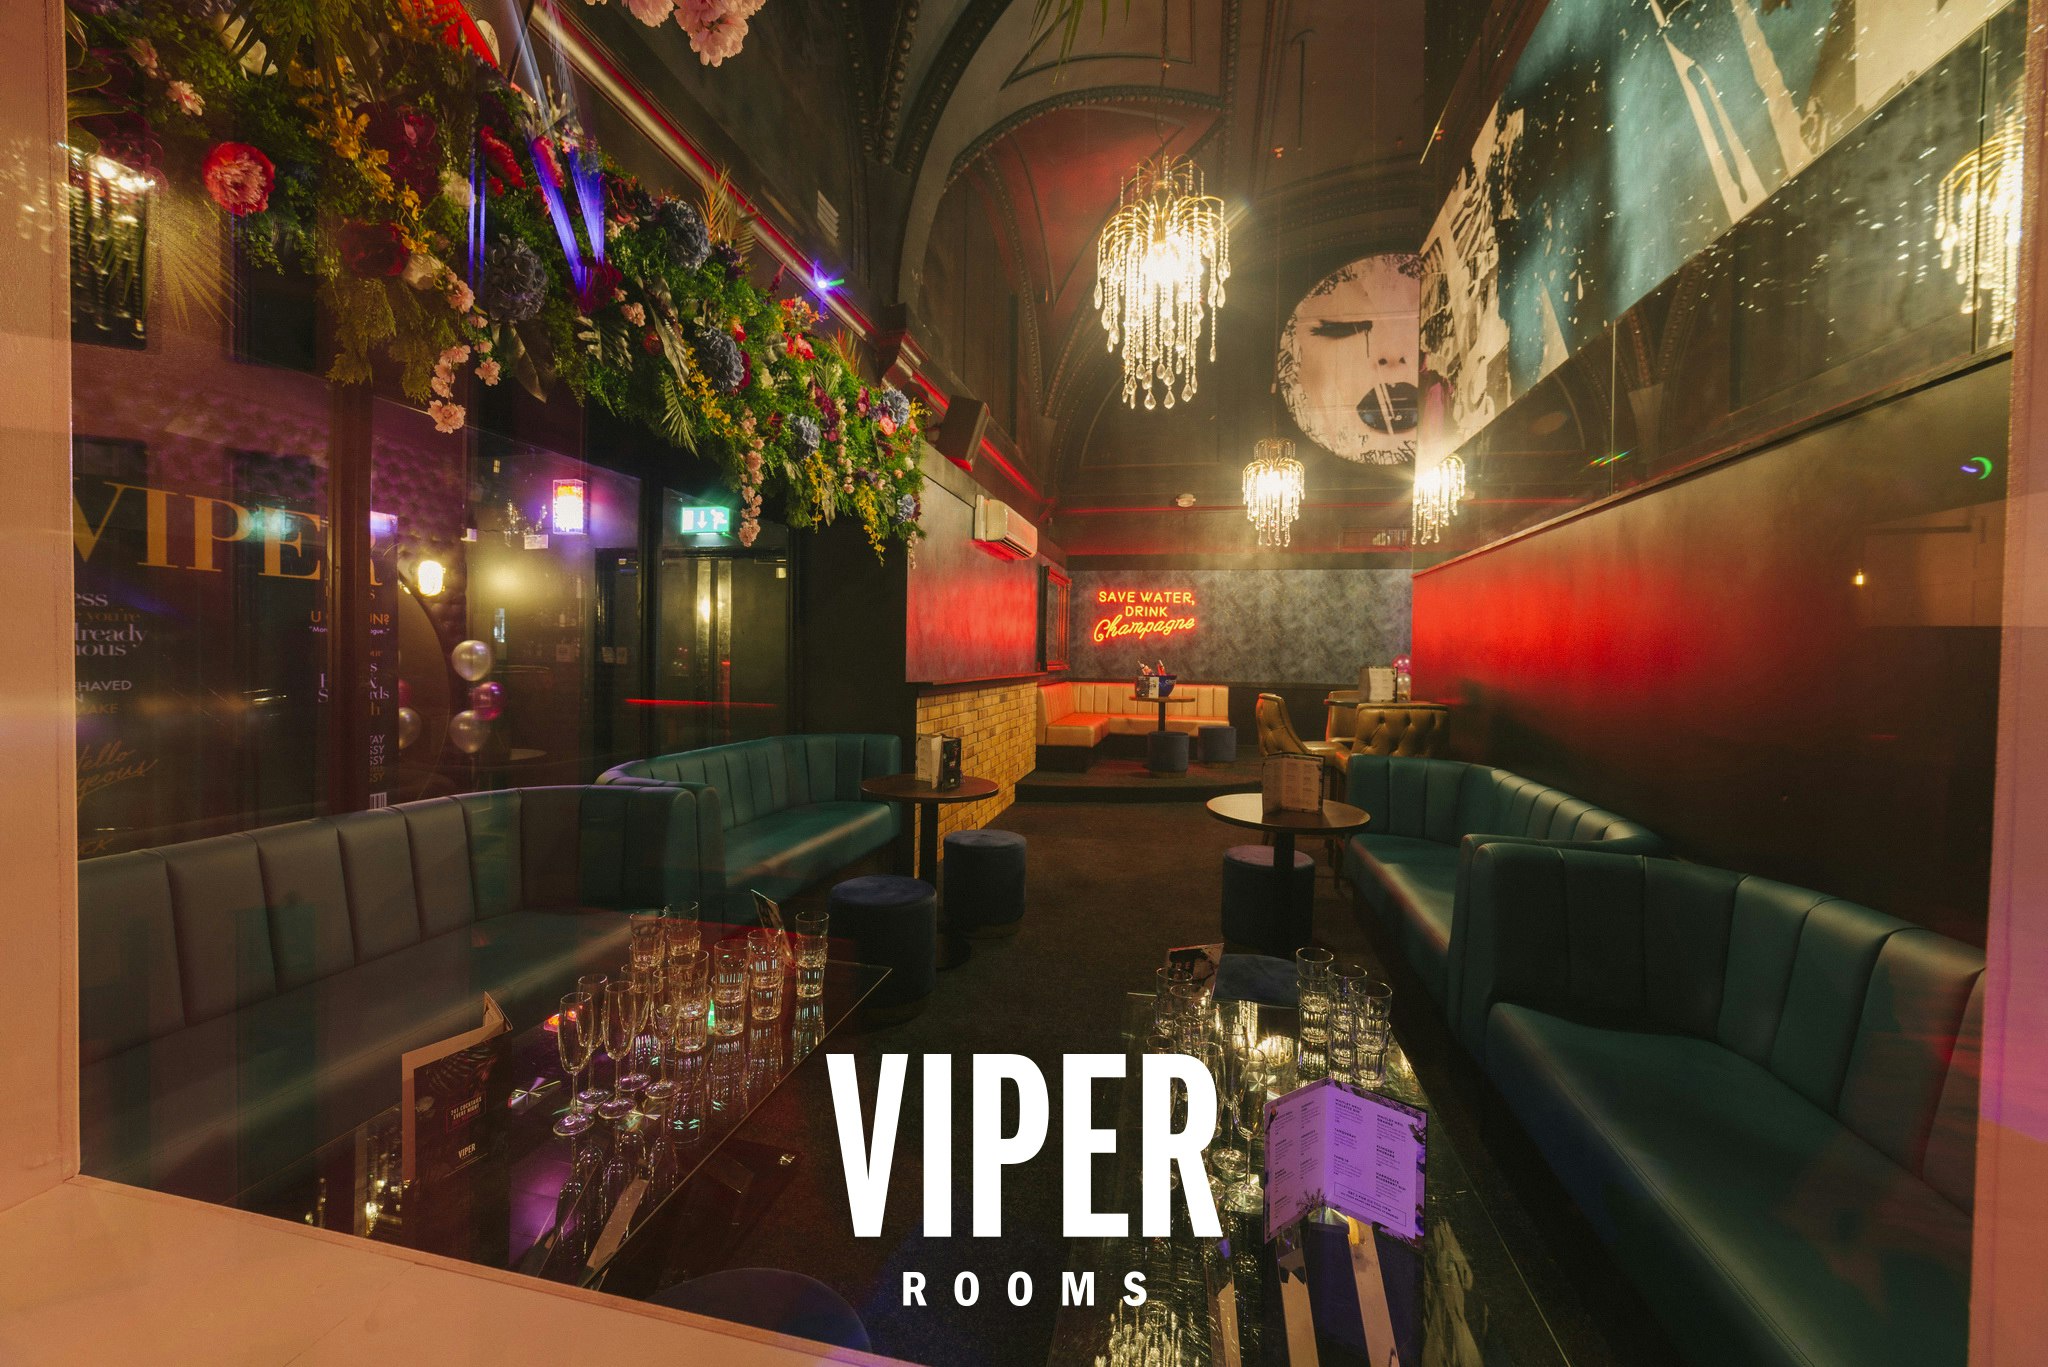 Viper Rooms Harrogate - Viper Rooms image 1